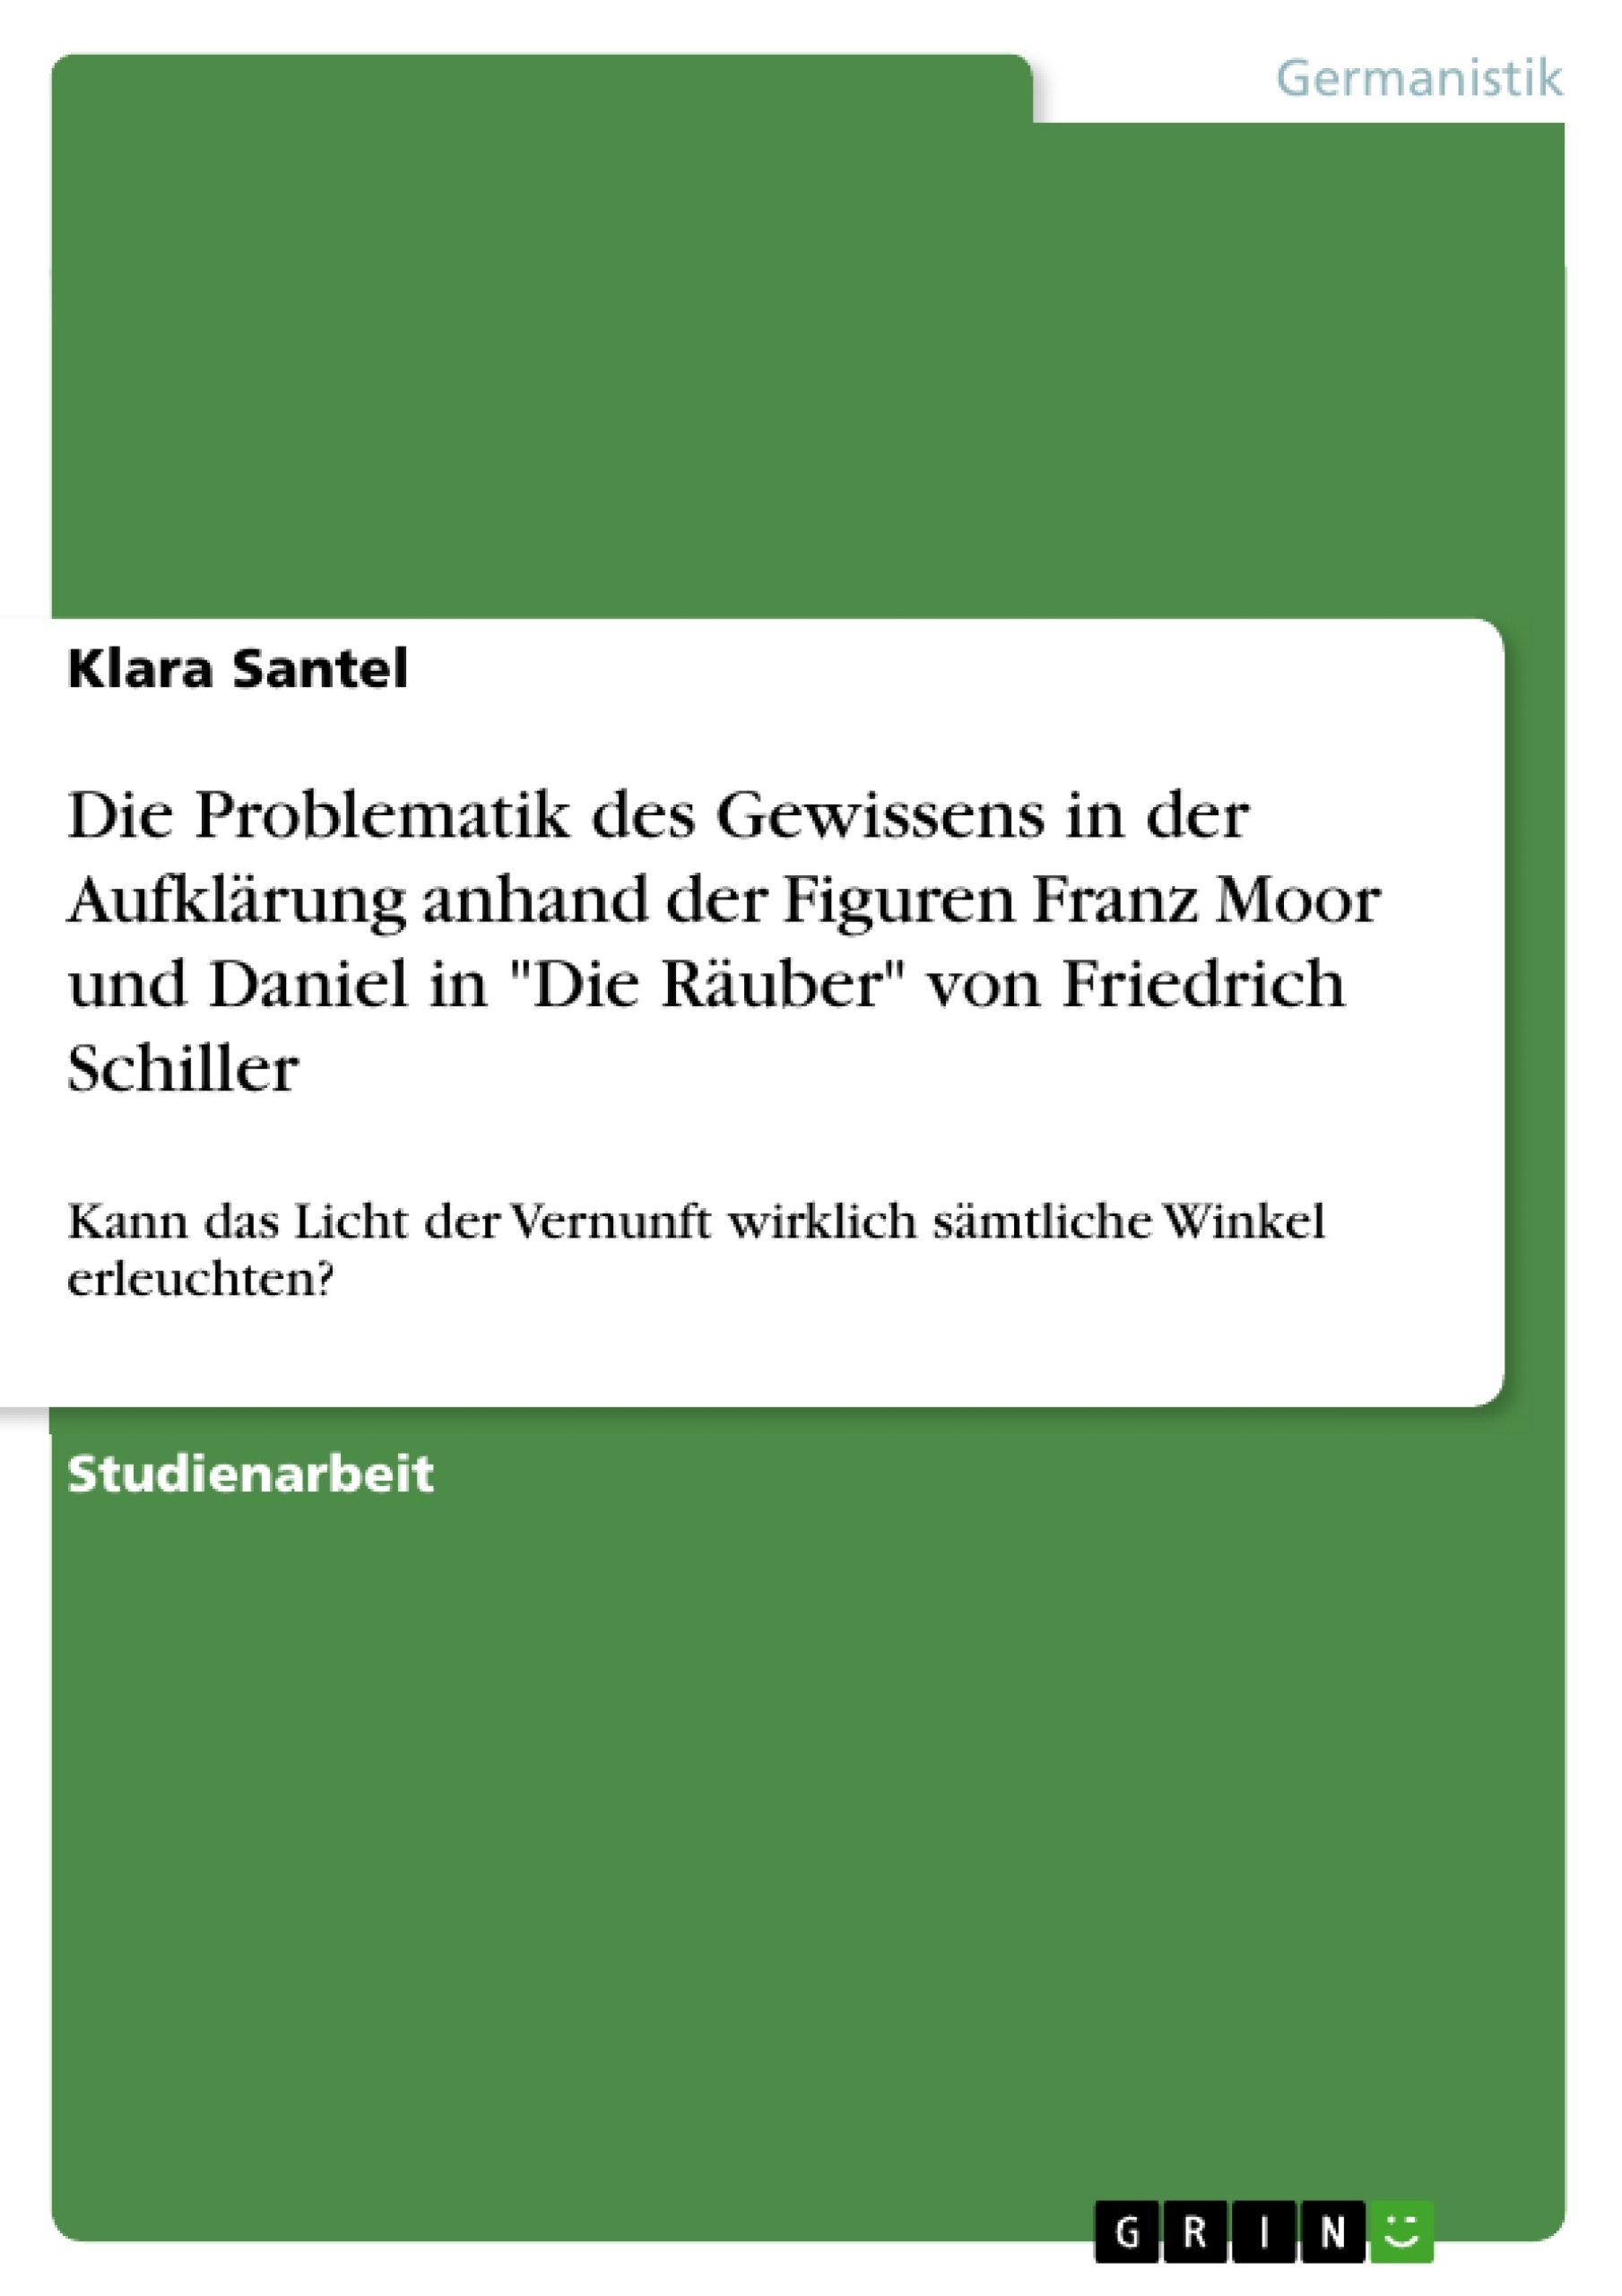 Title: Die Problematik des Gewissens in der Aufklärung anhand der Figuren Franz Moor und Daniel in "Die Räuber" von Friedrich Schiller